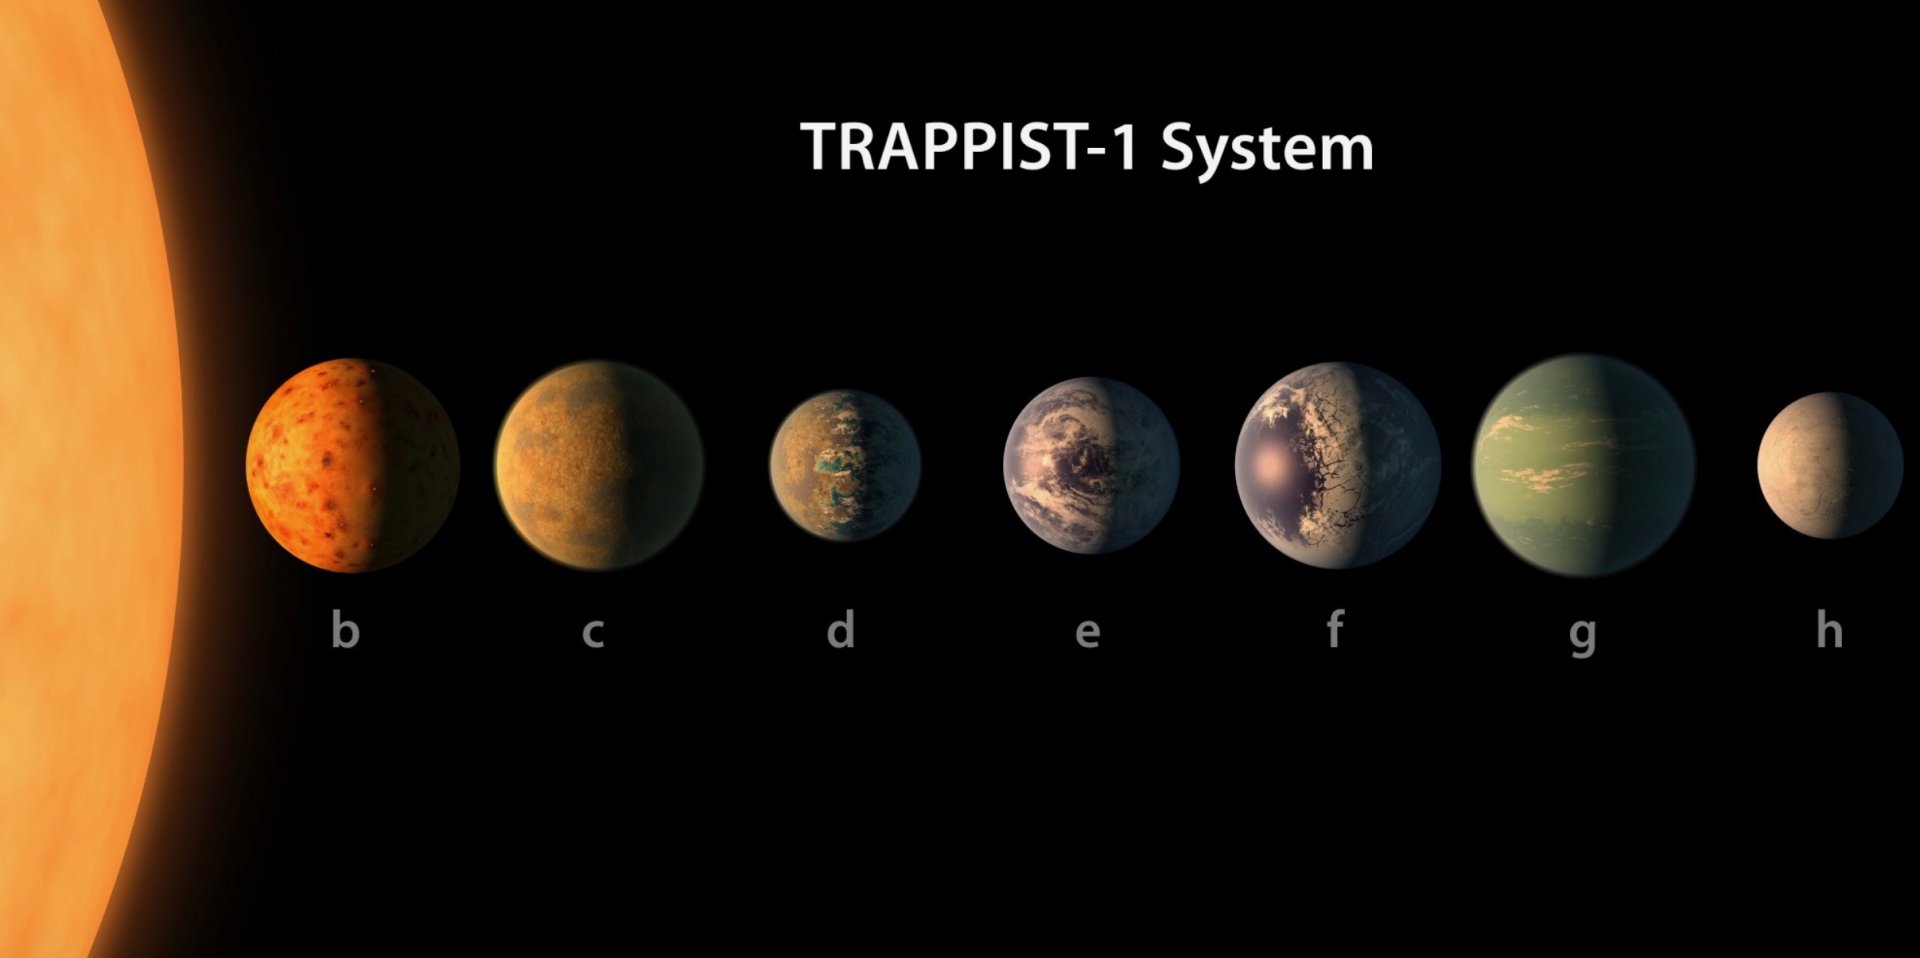 علماء الفلك: اثنين من كوكب نظام الترابيست-1 للسكن